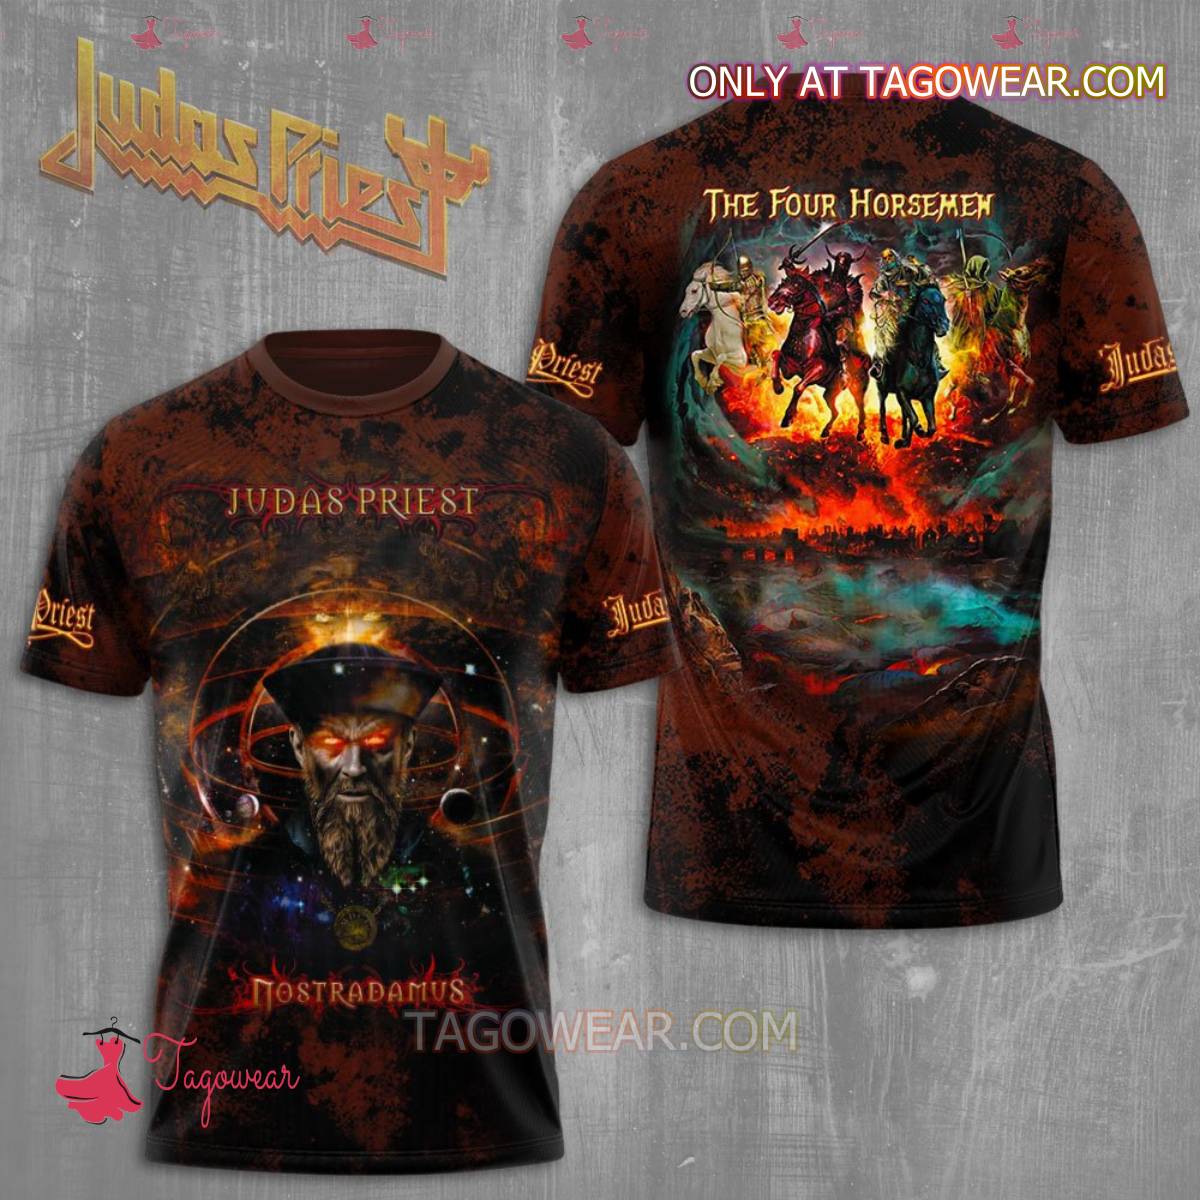 Judas Priest Nostradamus The Four Horsemen T-shirt, Hoodie - Tagowear